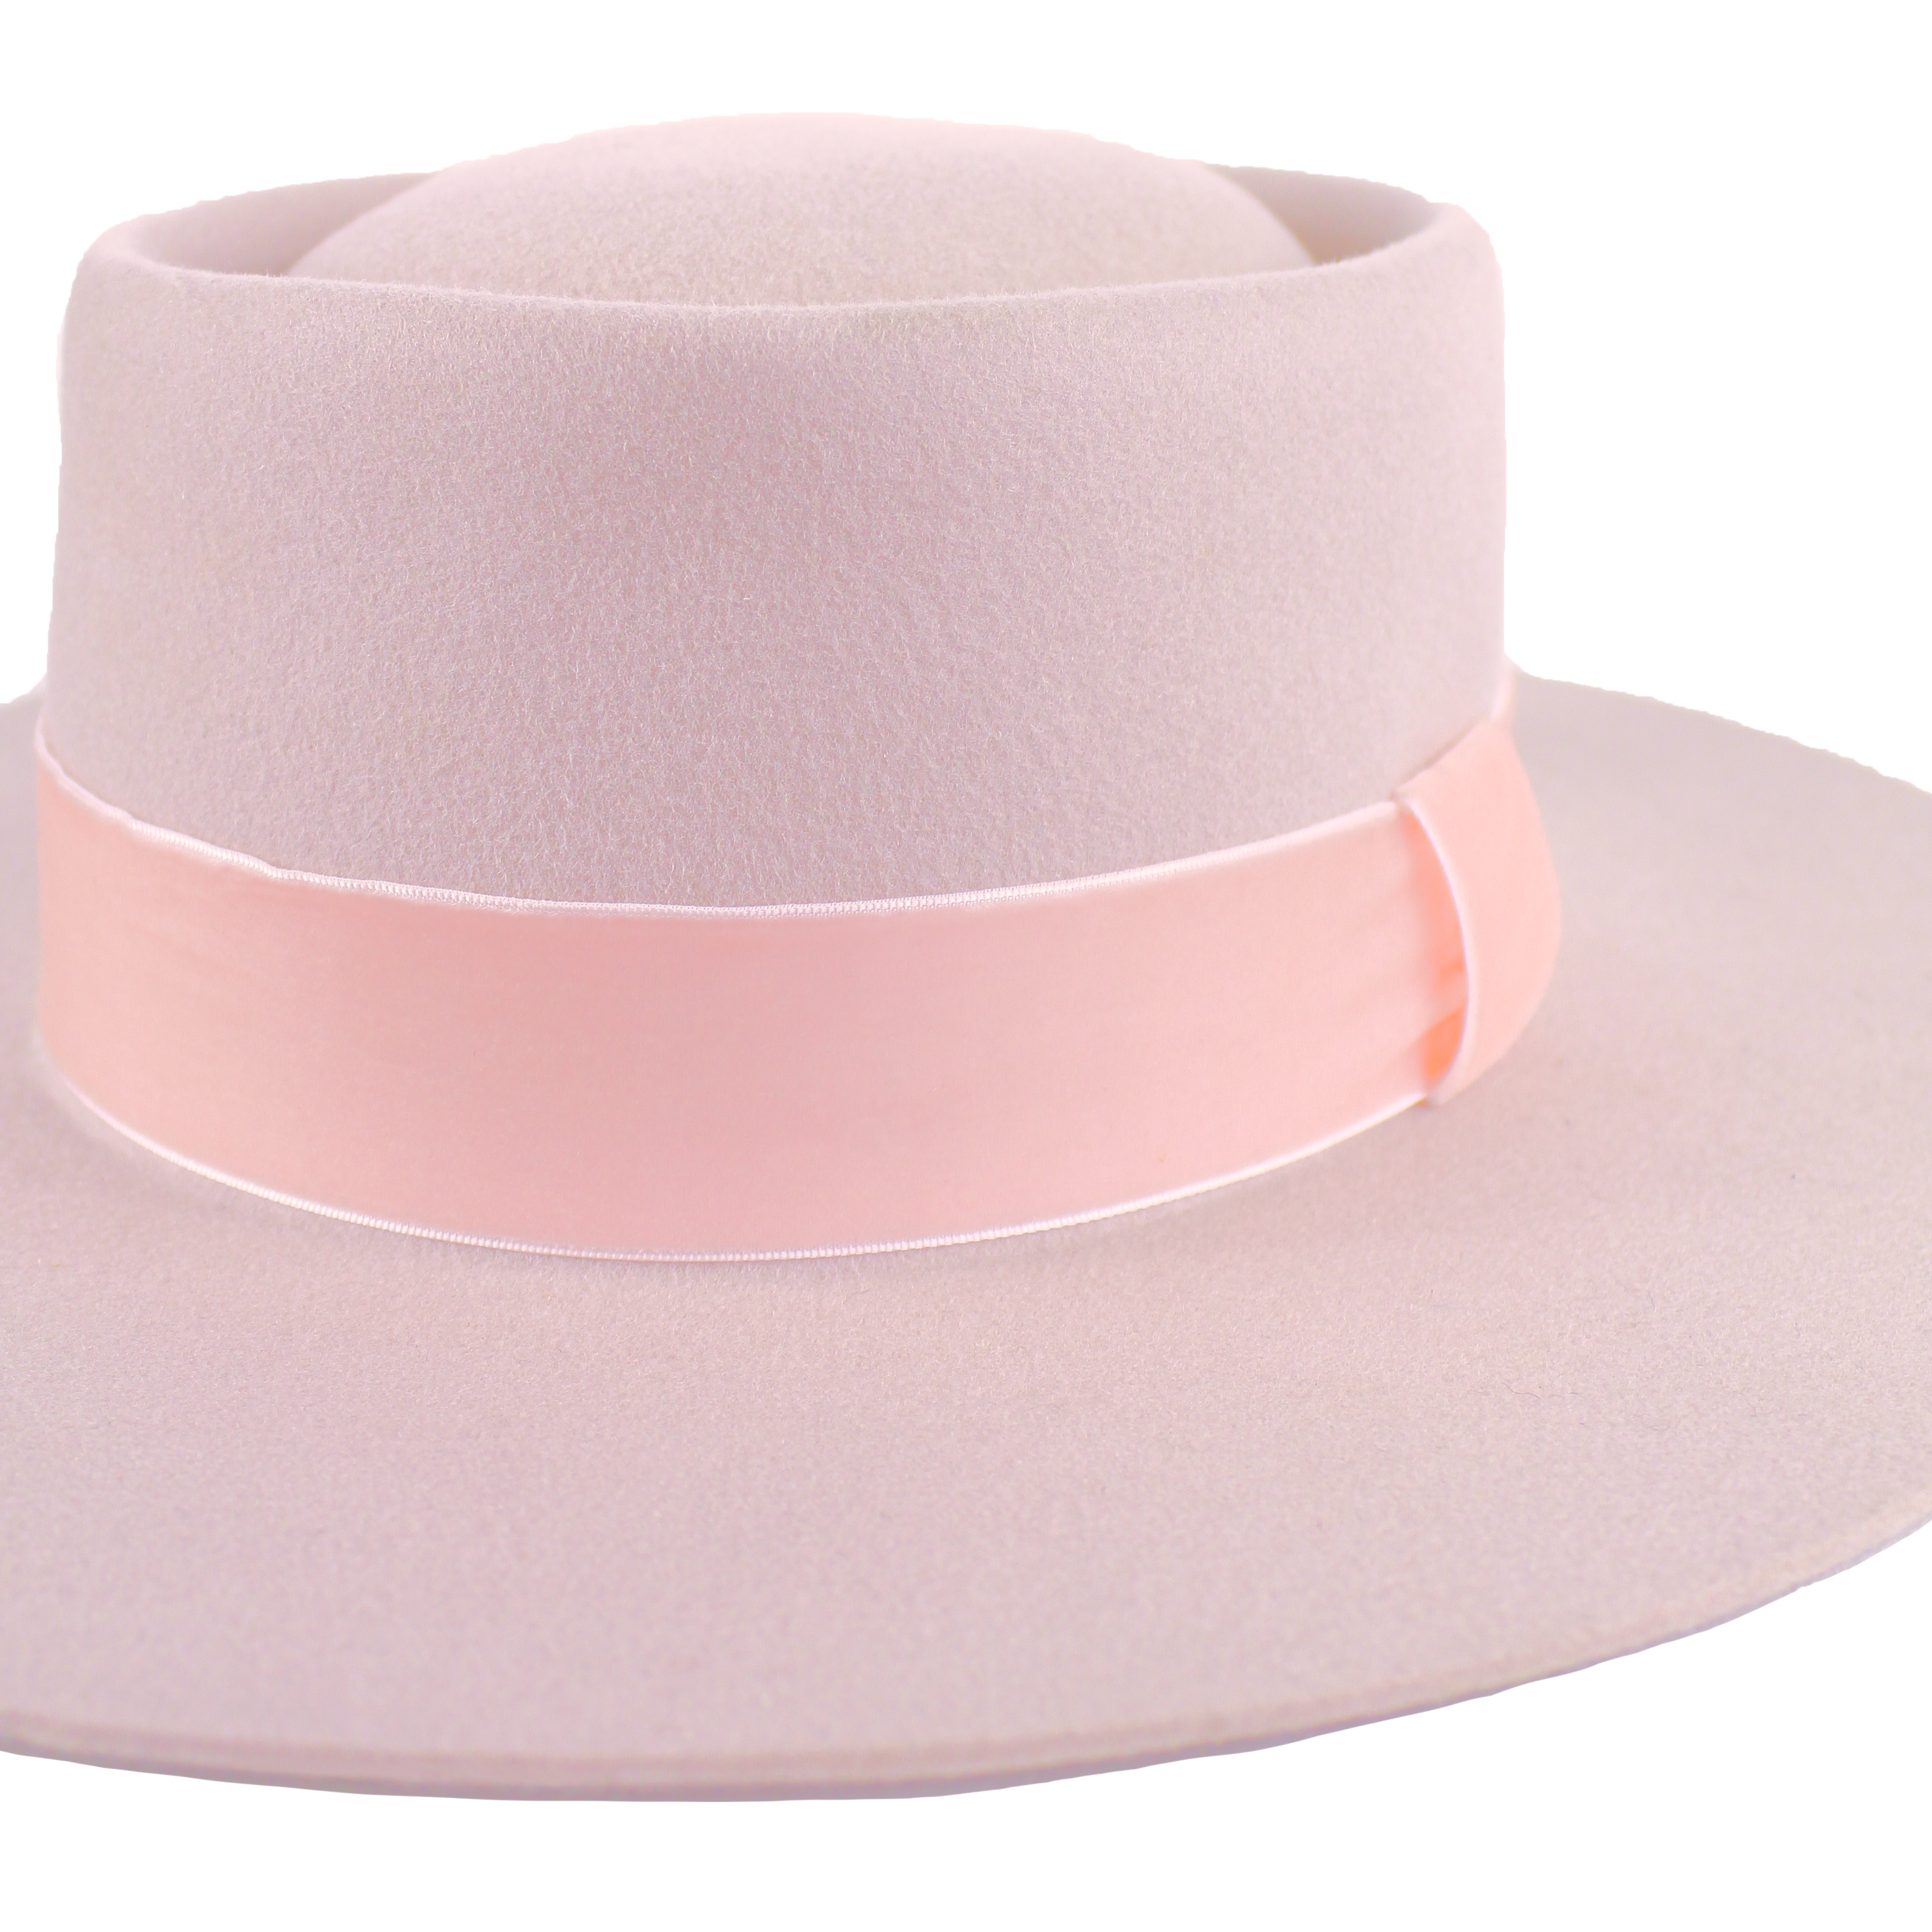 Trendy kayo hat in soft blush